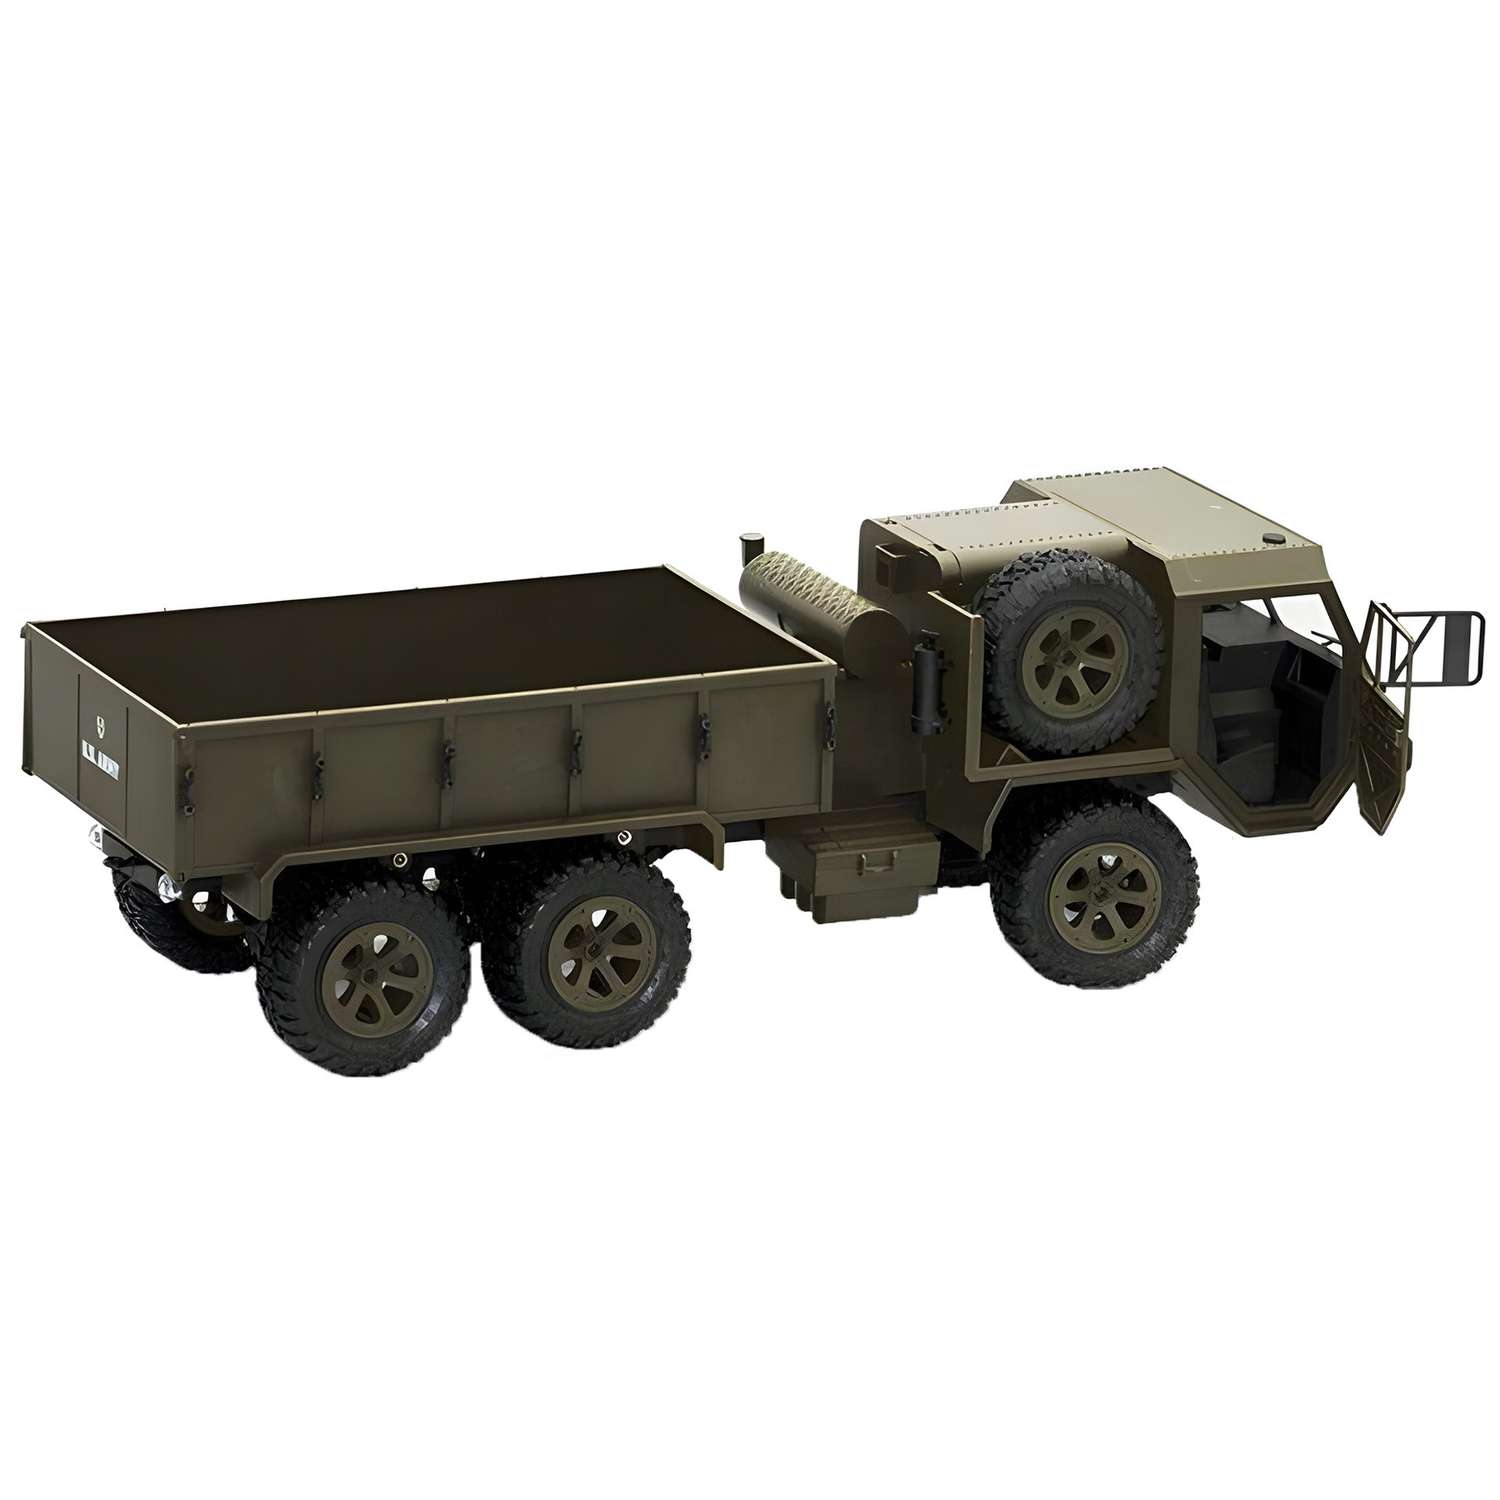 Радиоуправляемая машина CS Toys американский военный грузовик 6WD RTR масштаб 1:16 2.4G - фото 3